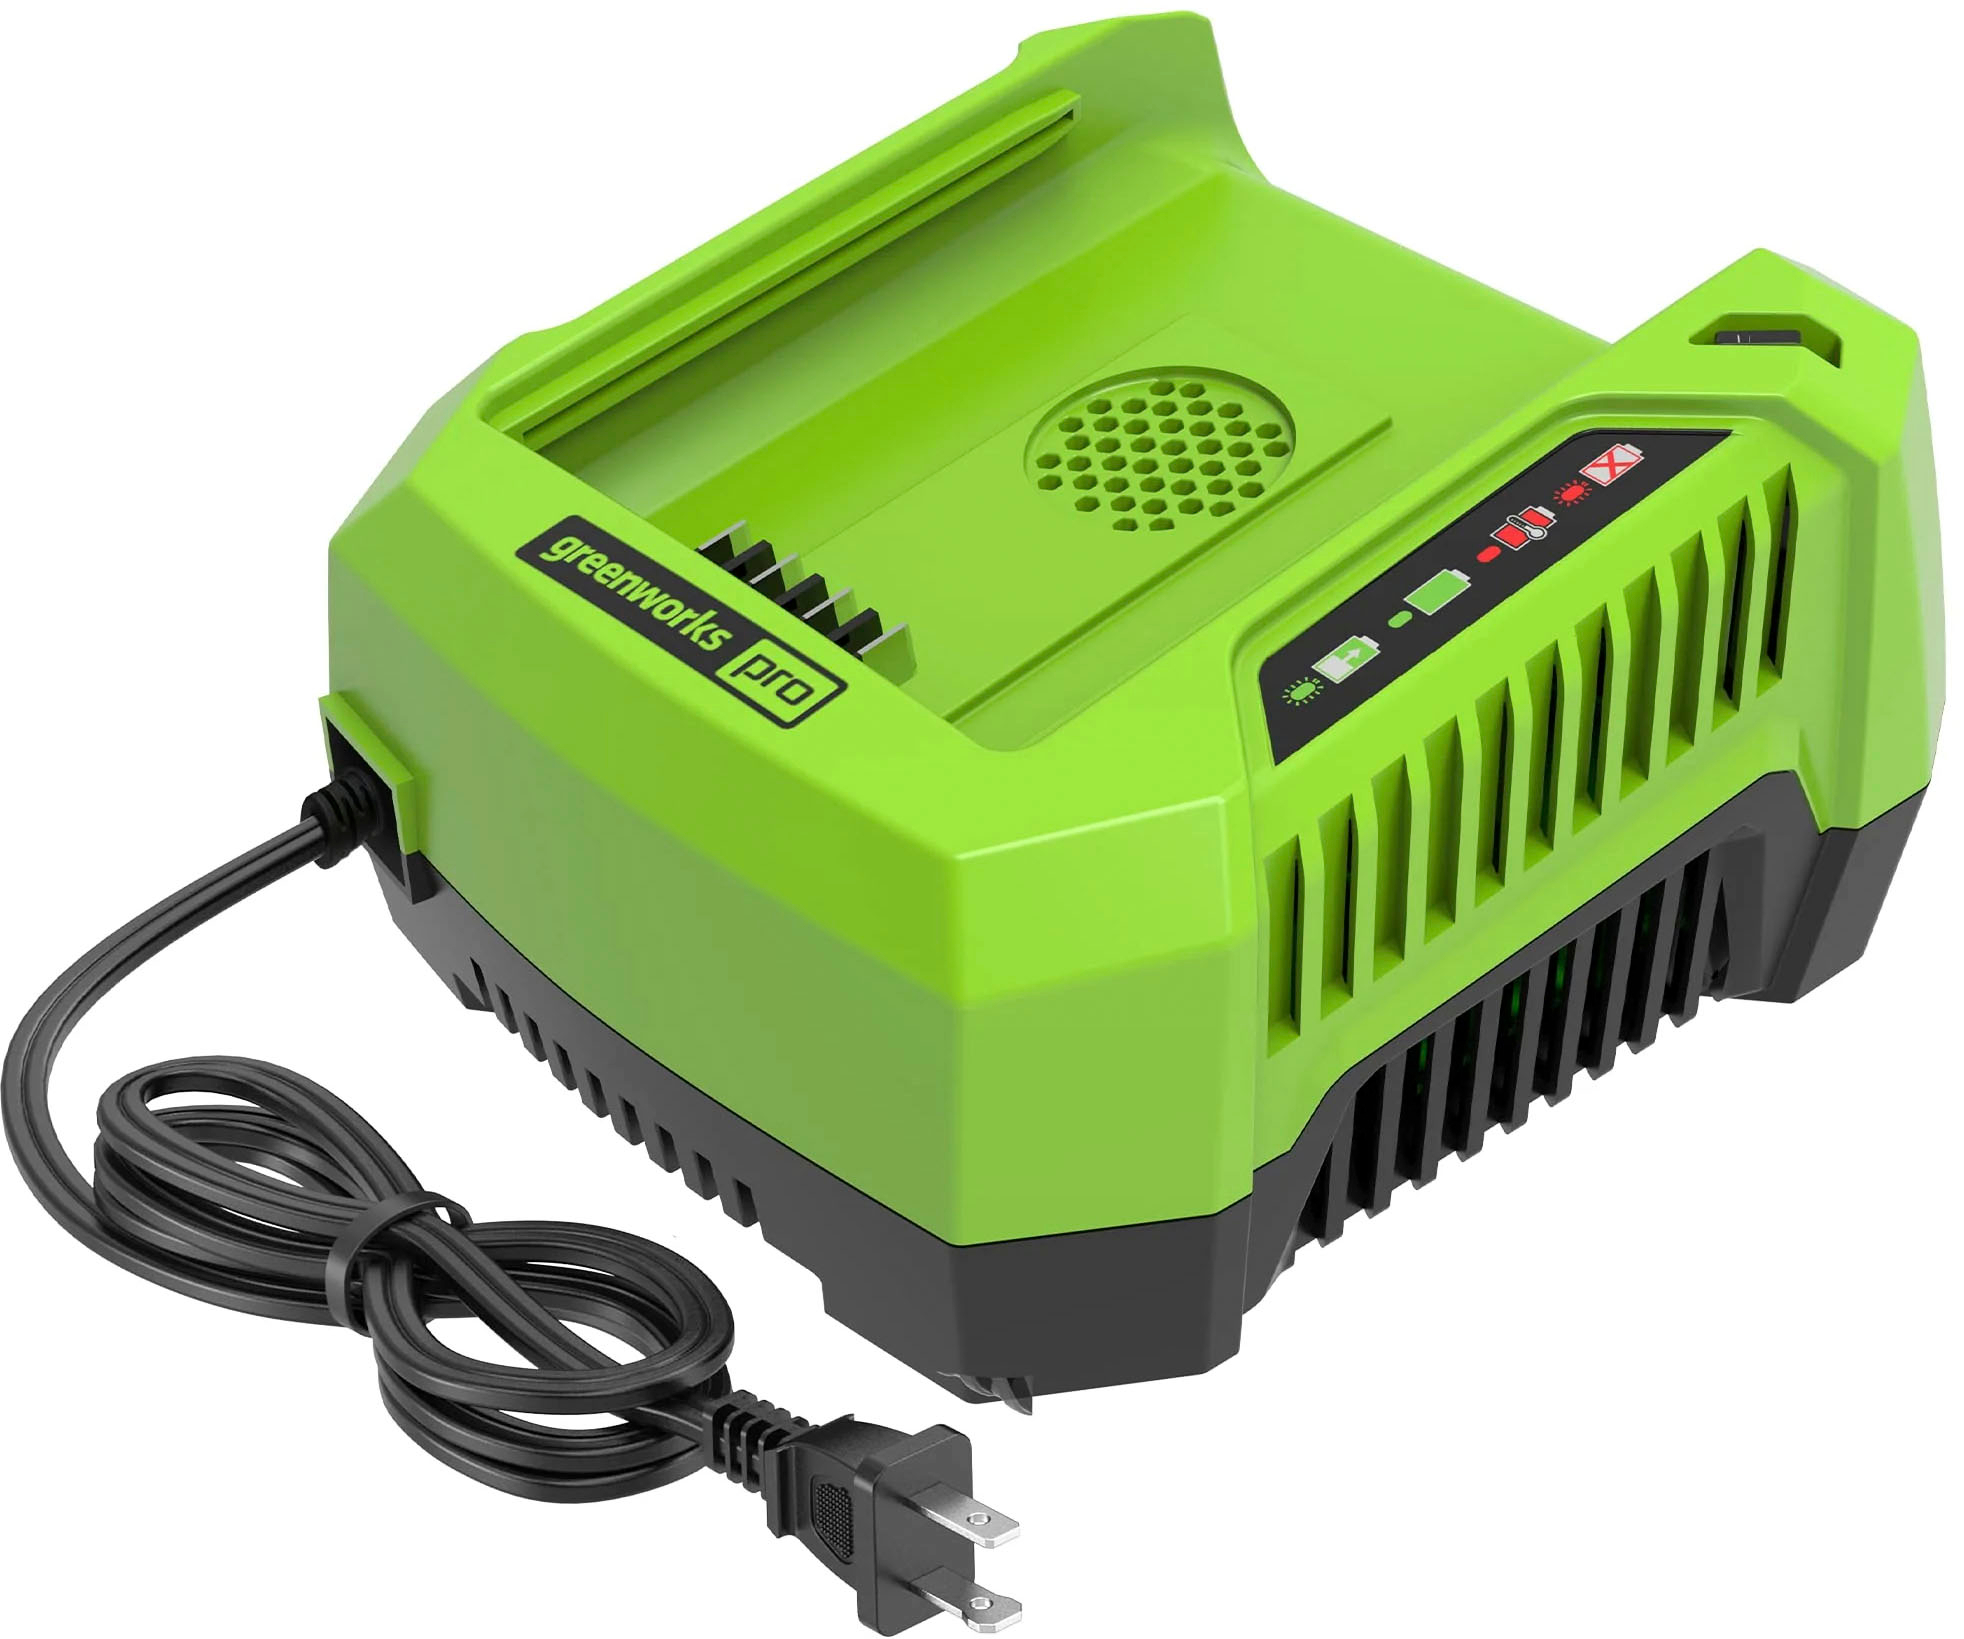 Greenworks 80 Volt Pro Rapid Battery Charger Black/Green 2901402 Best Buy